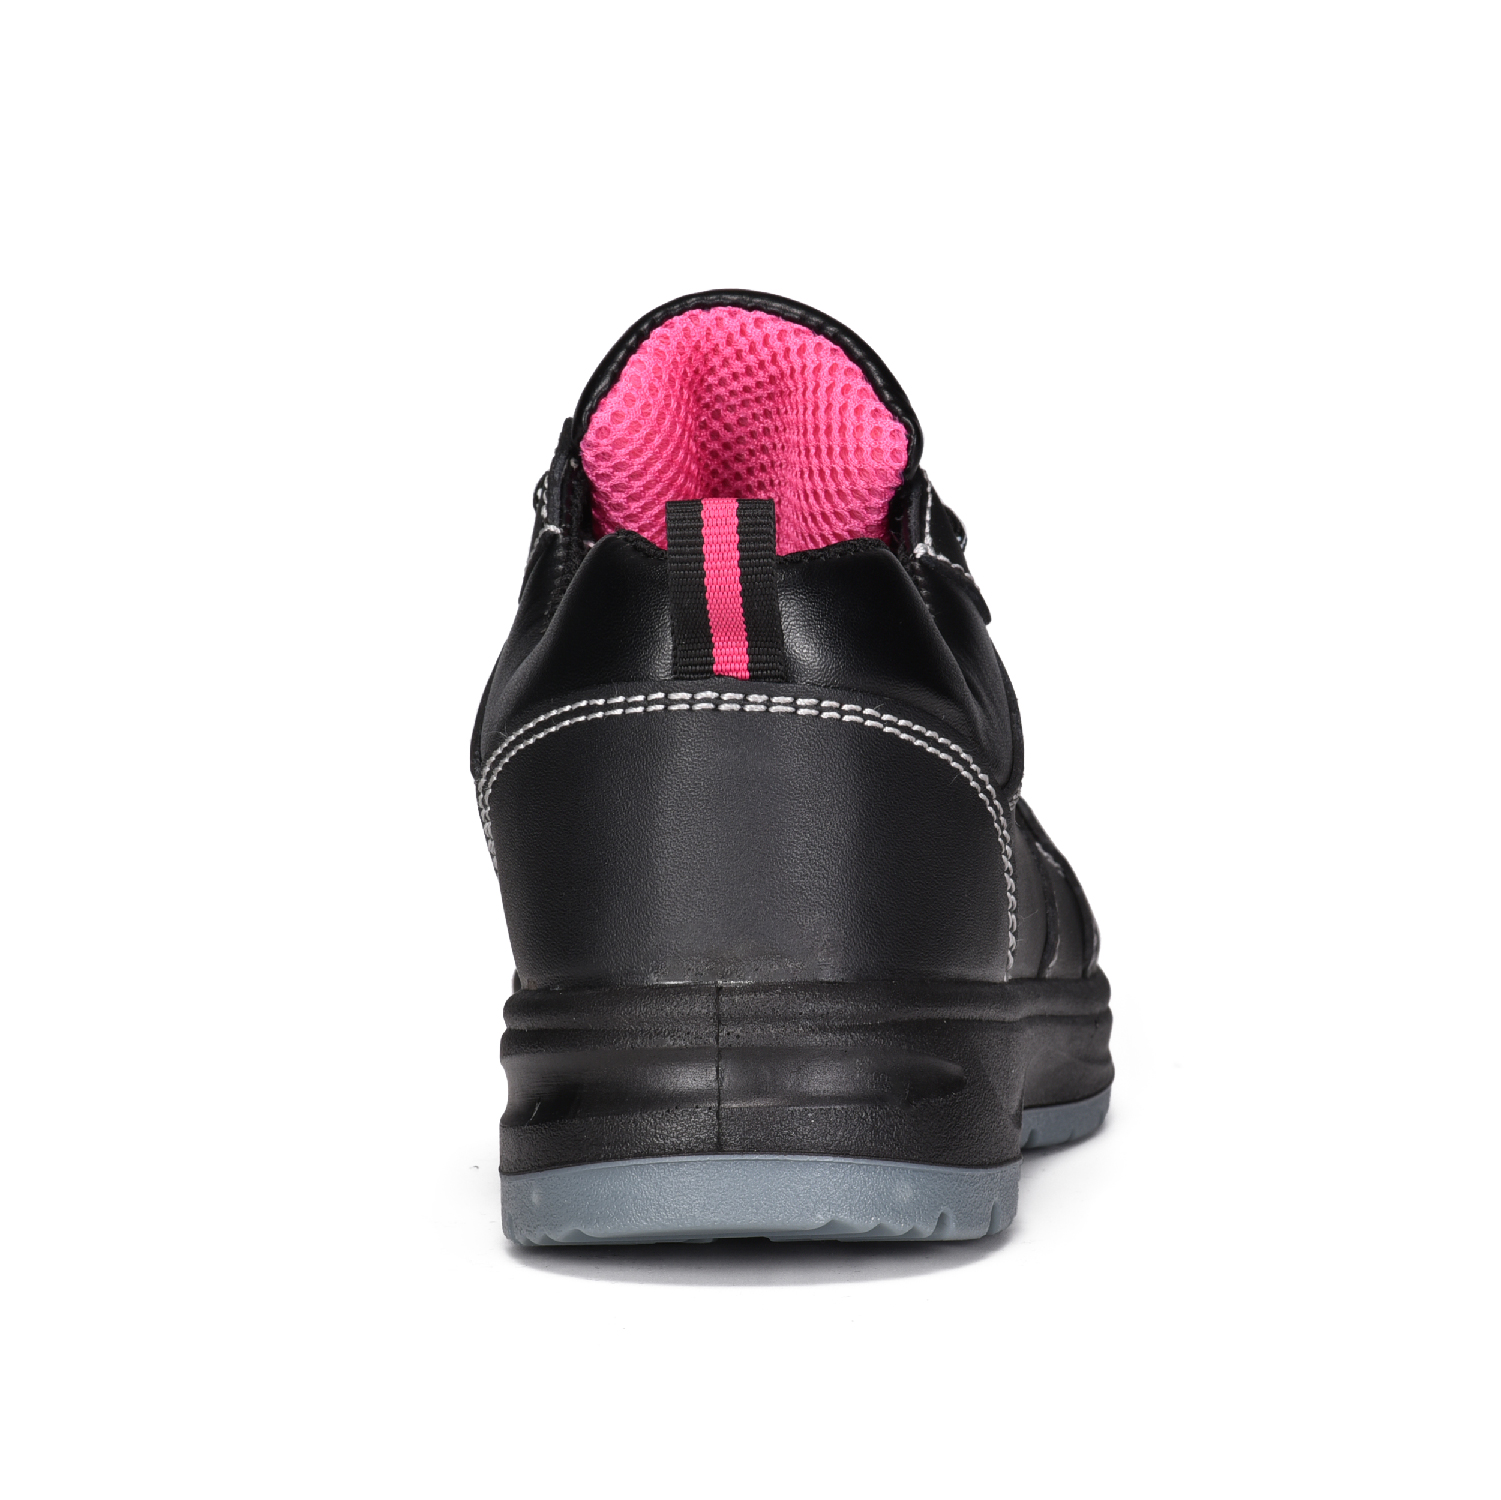 Zapatos de Trabajo Mujer Piel Vacuno Negro con Puntera de Acero de Seguridad L-7508 Liso